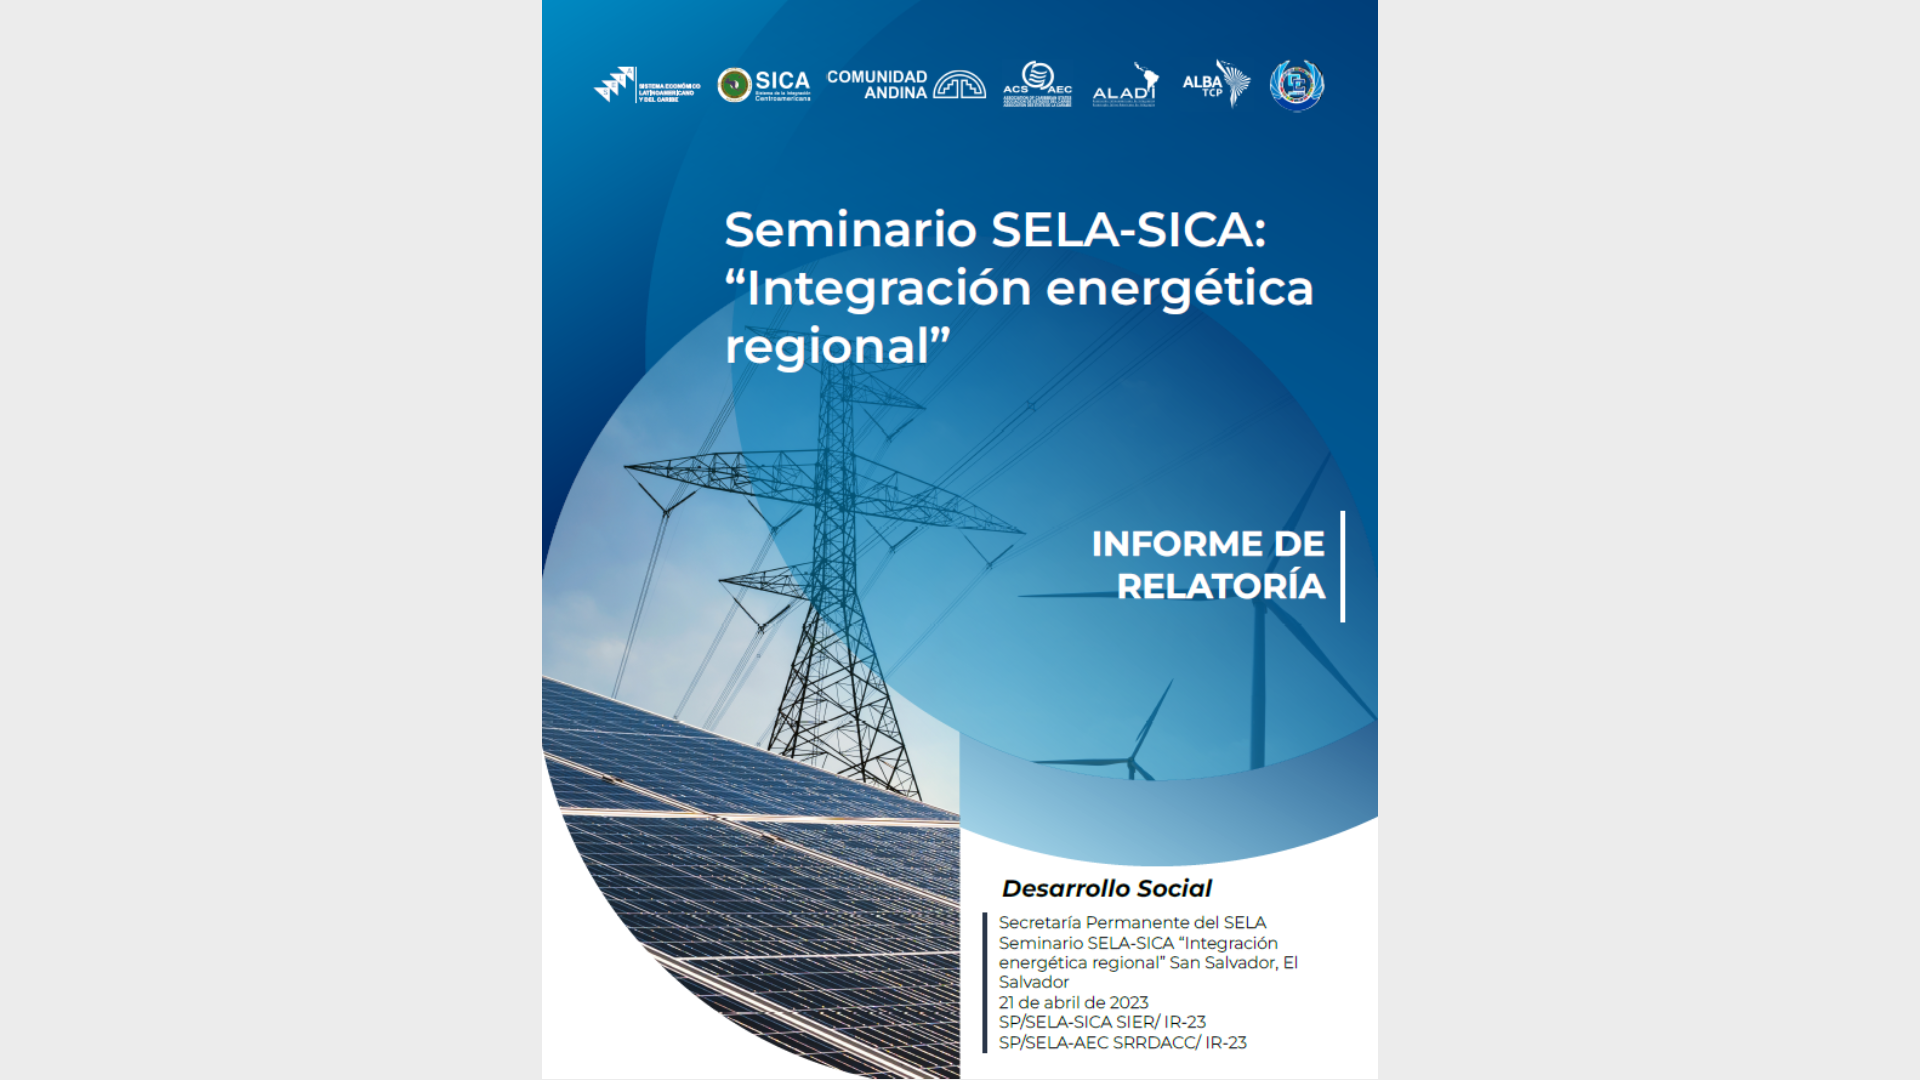 Seminario SELA-SICA: Integración energética regional - Informe de relatoría